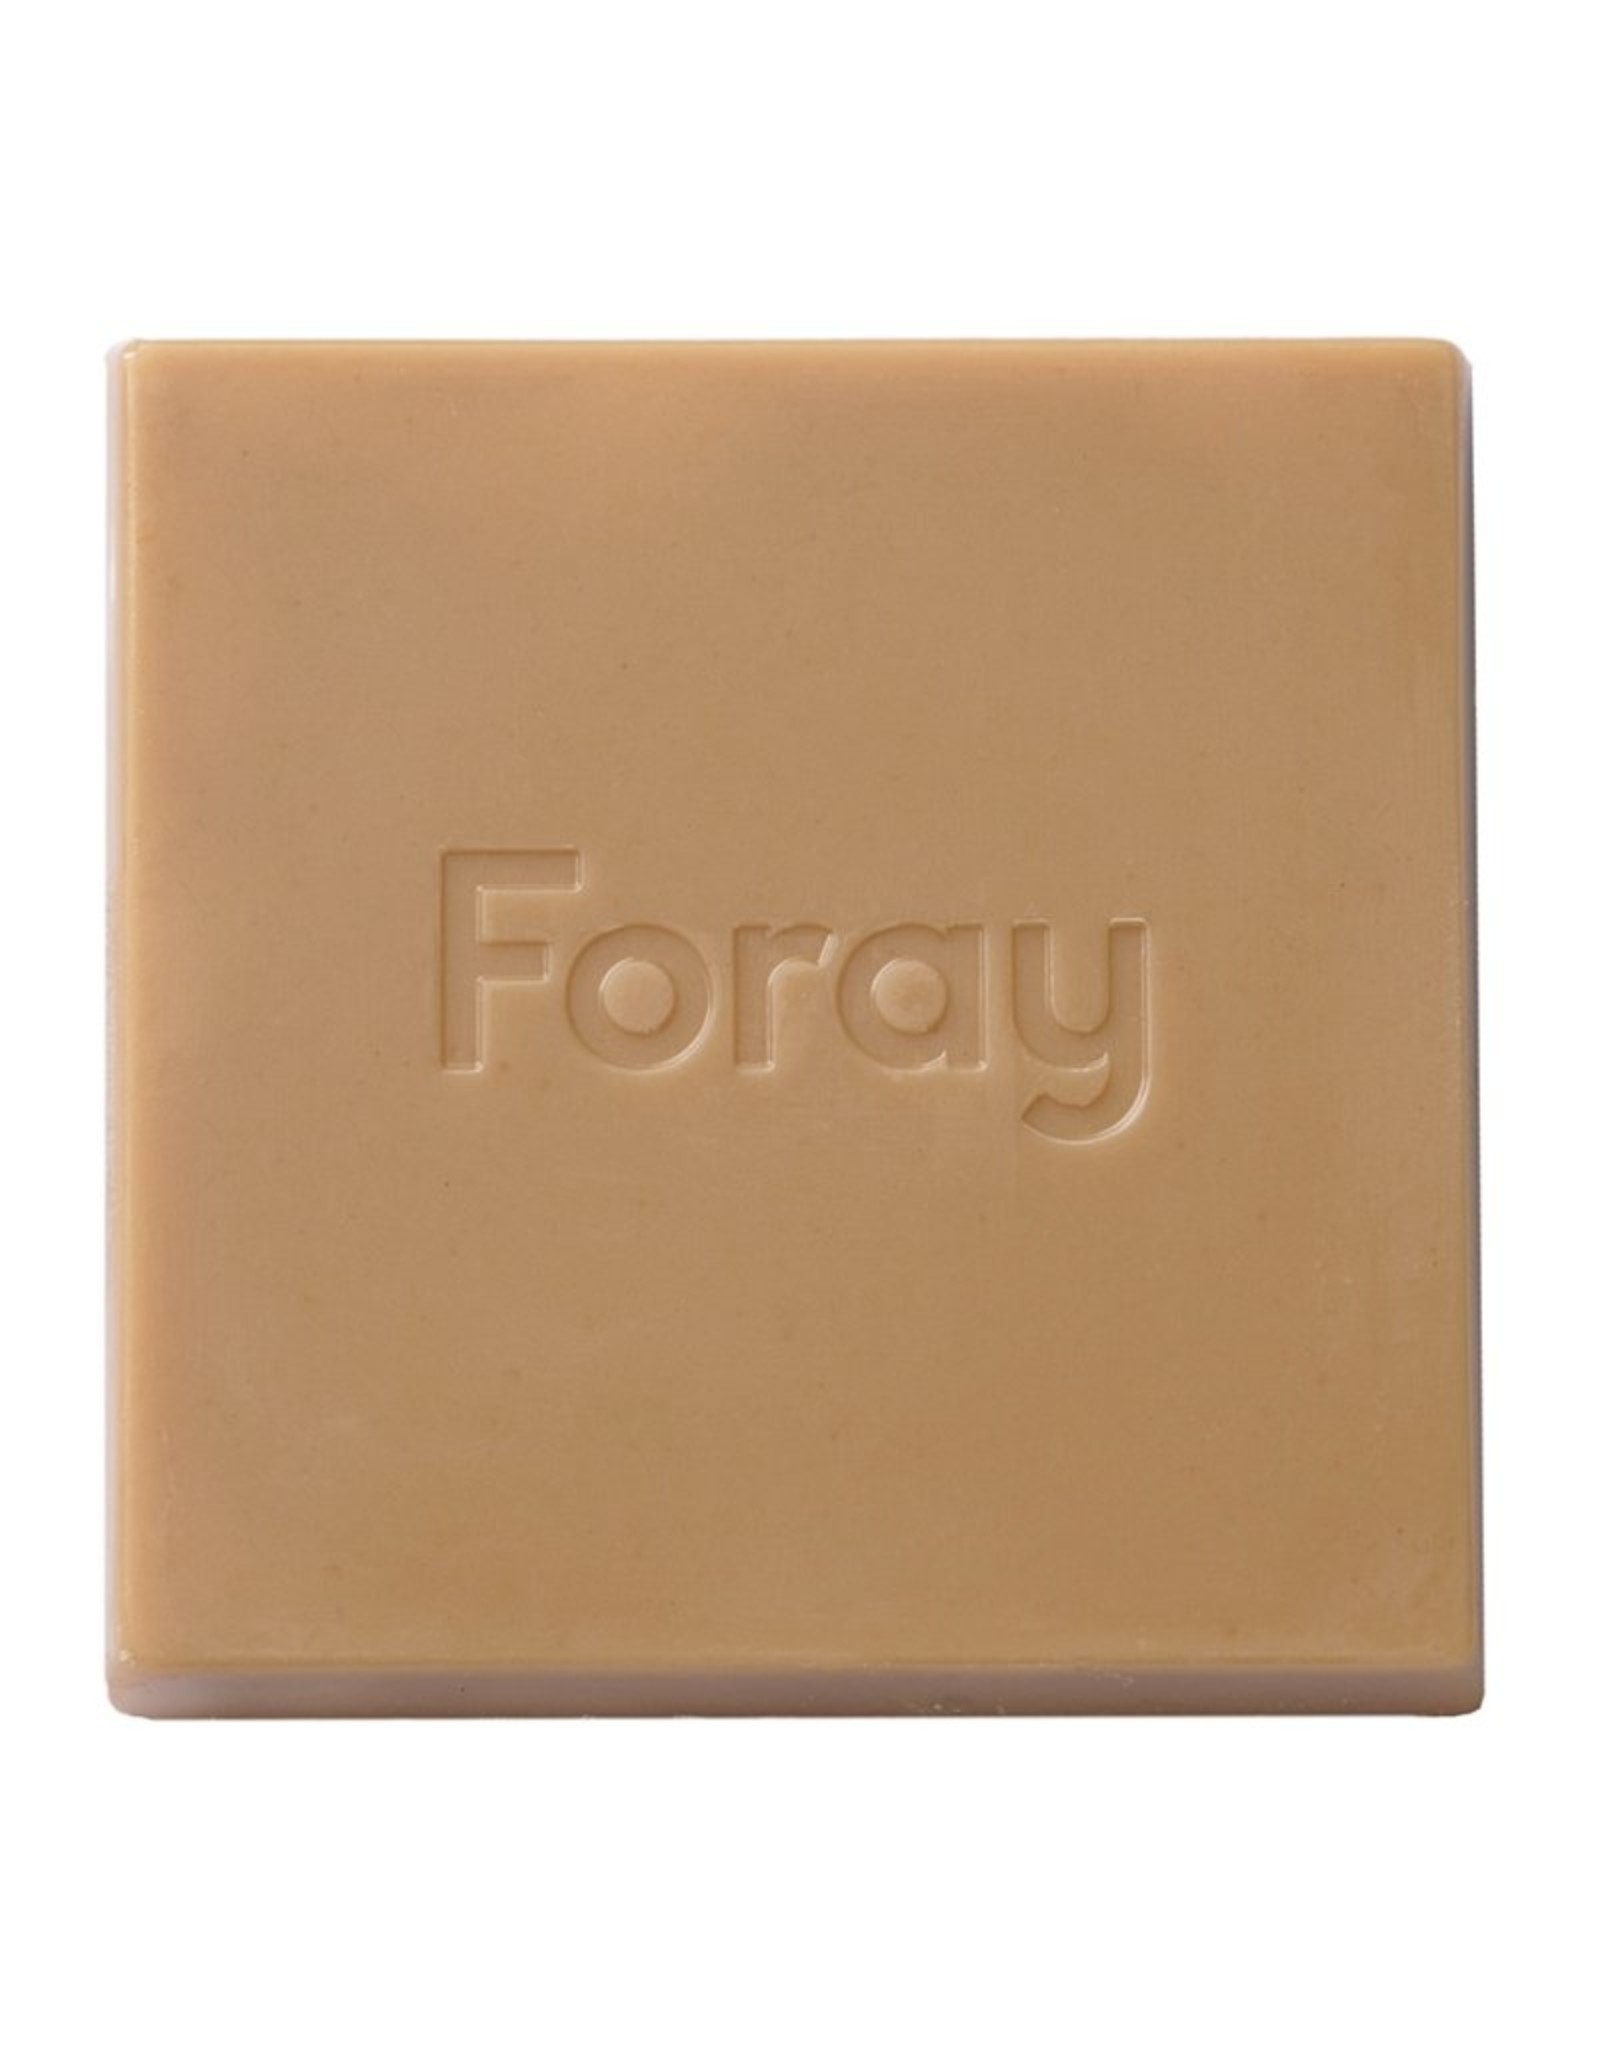 Foray - Caramel Apple Pie Chocolate Square